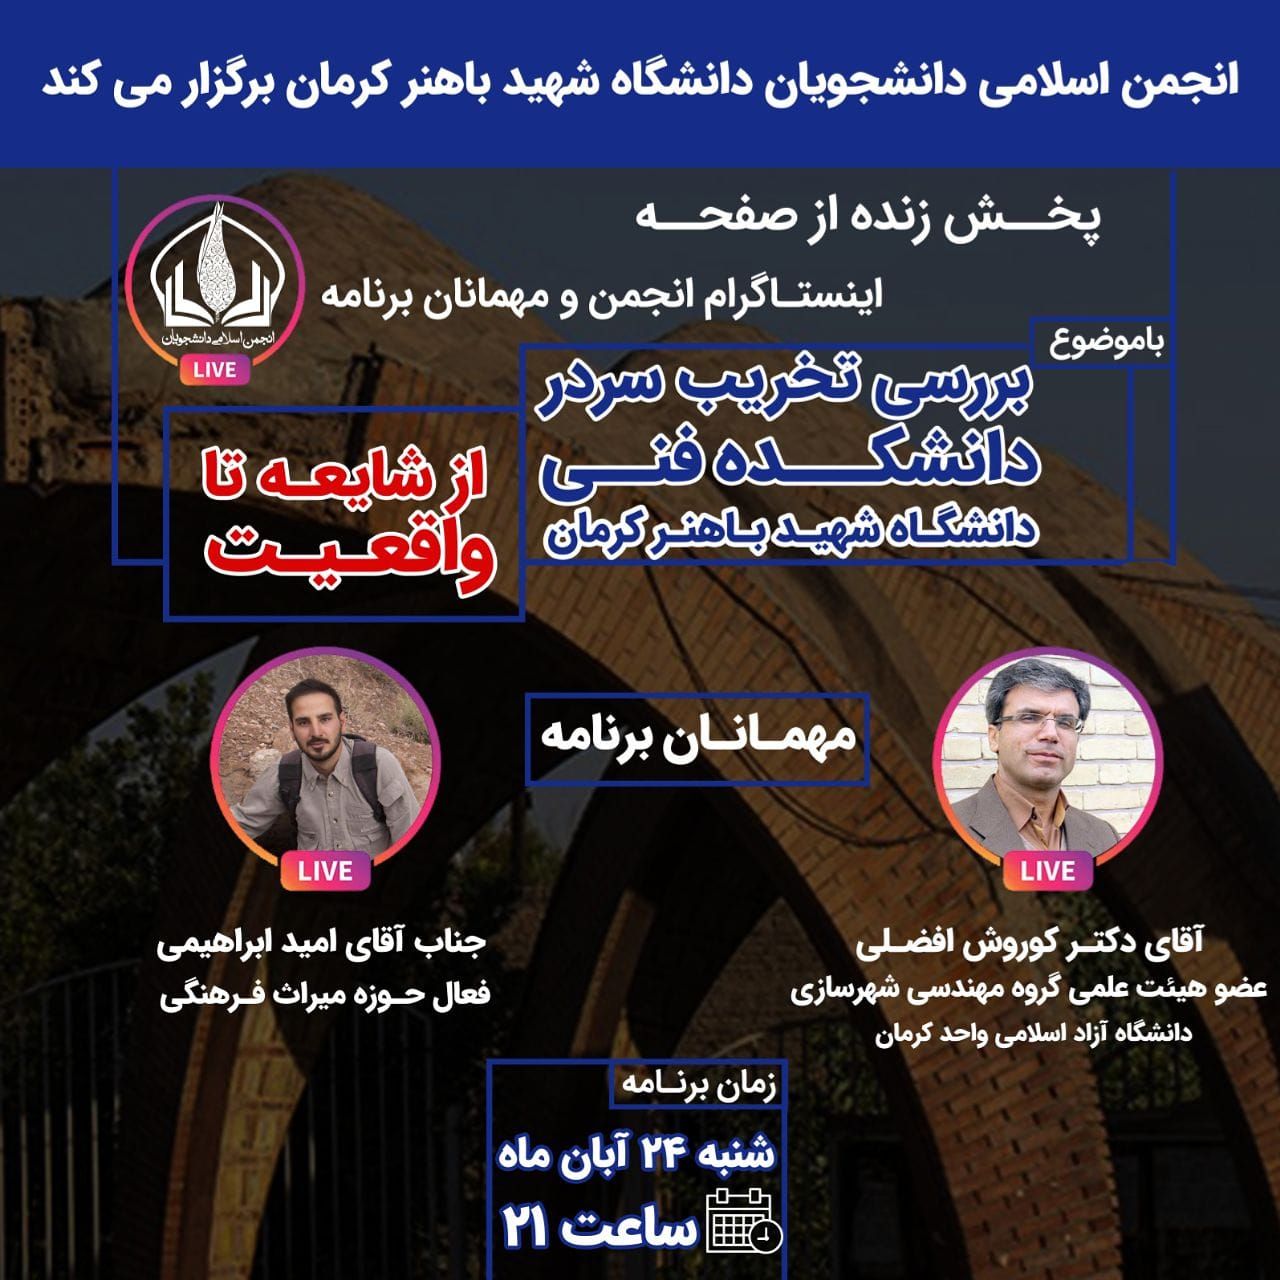 بررسی تخریب سردر دانشکده فنی دانشگاه شهید باهنر از طریق لایو اینستاگرامی